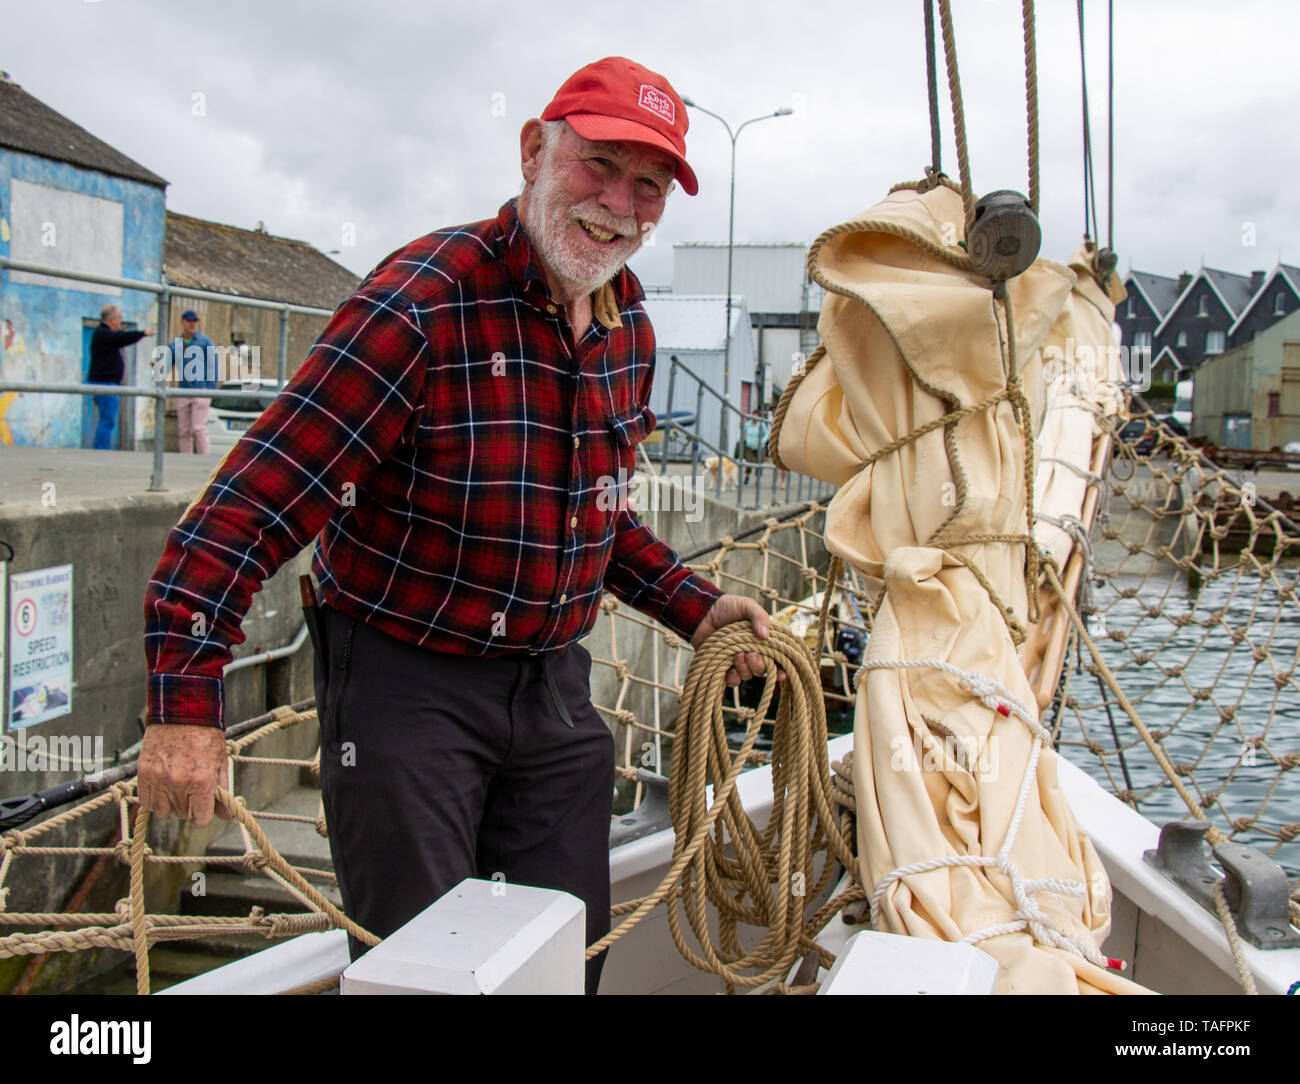 La barca di legno Festival, Baltimore, West Cork, Irlanda, 25 maggio 2019, il Festival annuale delle imbarcazioni in legno si svolgerà questo fine settimana a Baltimora. Una delle imbarcazioni che partecipano è il Ilen, lanciato nel 1926 come una nave commerciale tra le isole Falkland. Ora completamente restaurato alla sua gloria precedente, Paddy Barry è uno dei fieri dell'equipaggio. Aphperspective credito/ Alamy Live News Foto Stock